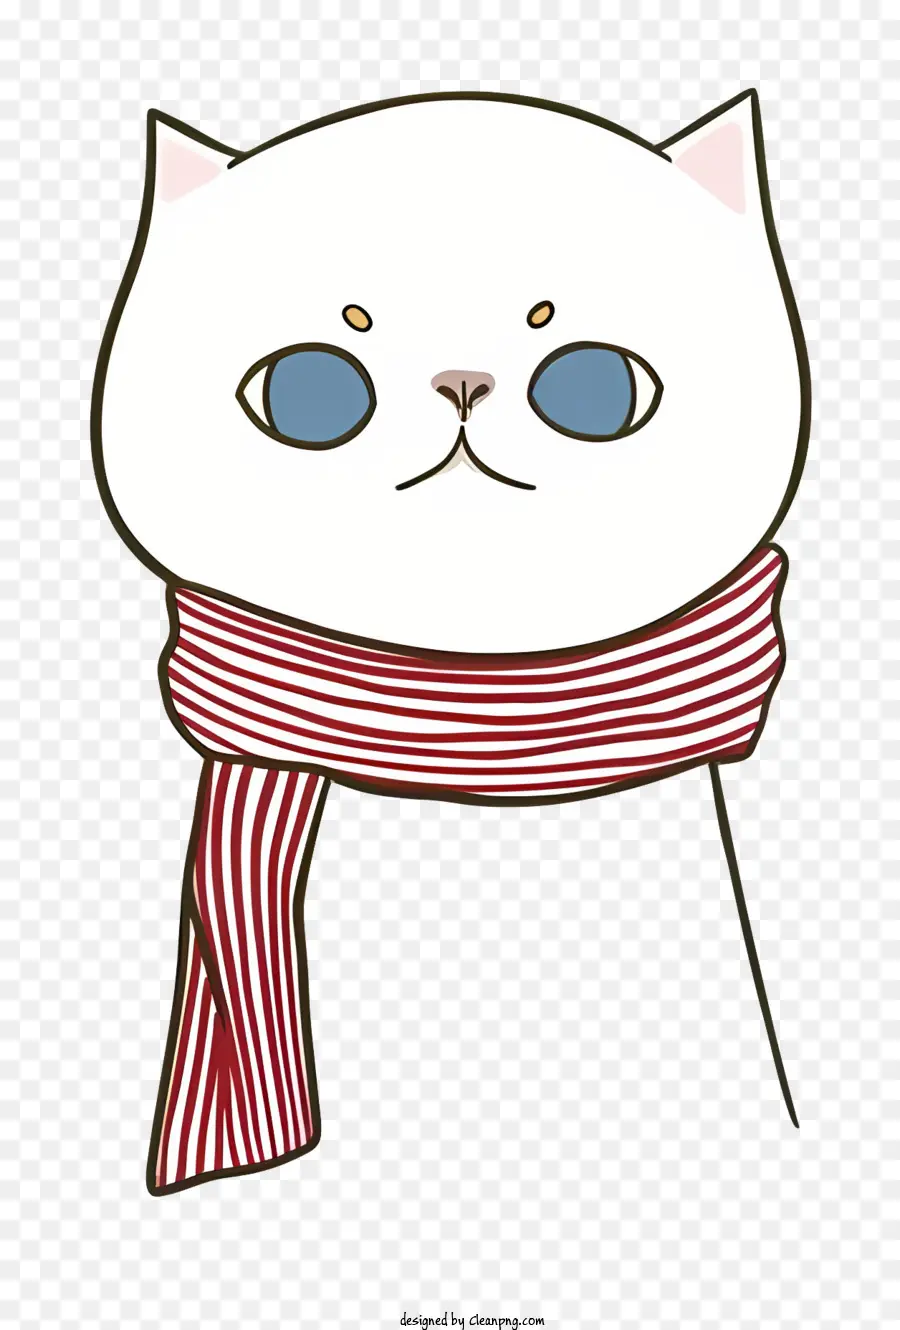 Katze mit Schal rot und weiß gestreiften Schal Blue Eyes Katze weiße Katze Schal um den Hals gebunden - Weiße Katze trägt rot -weißer Schal